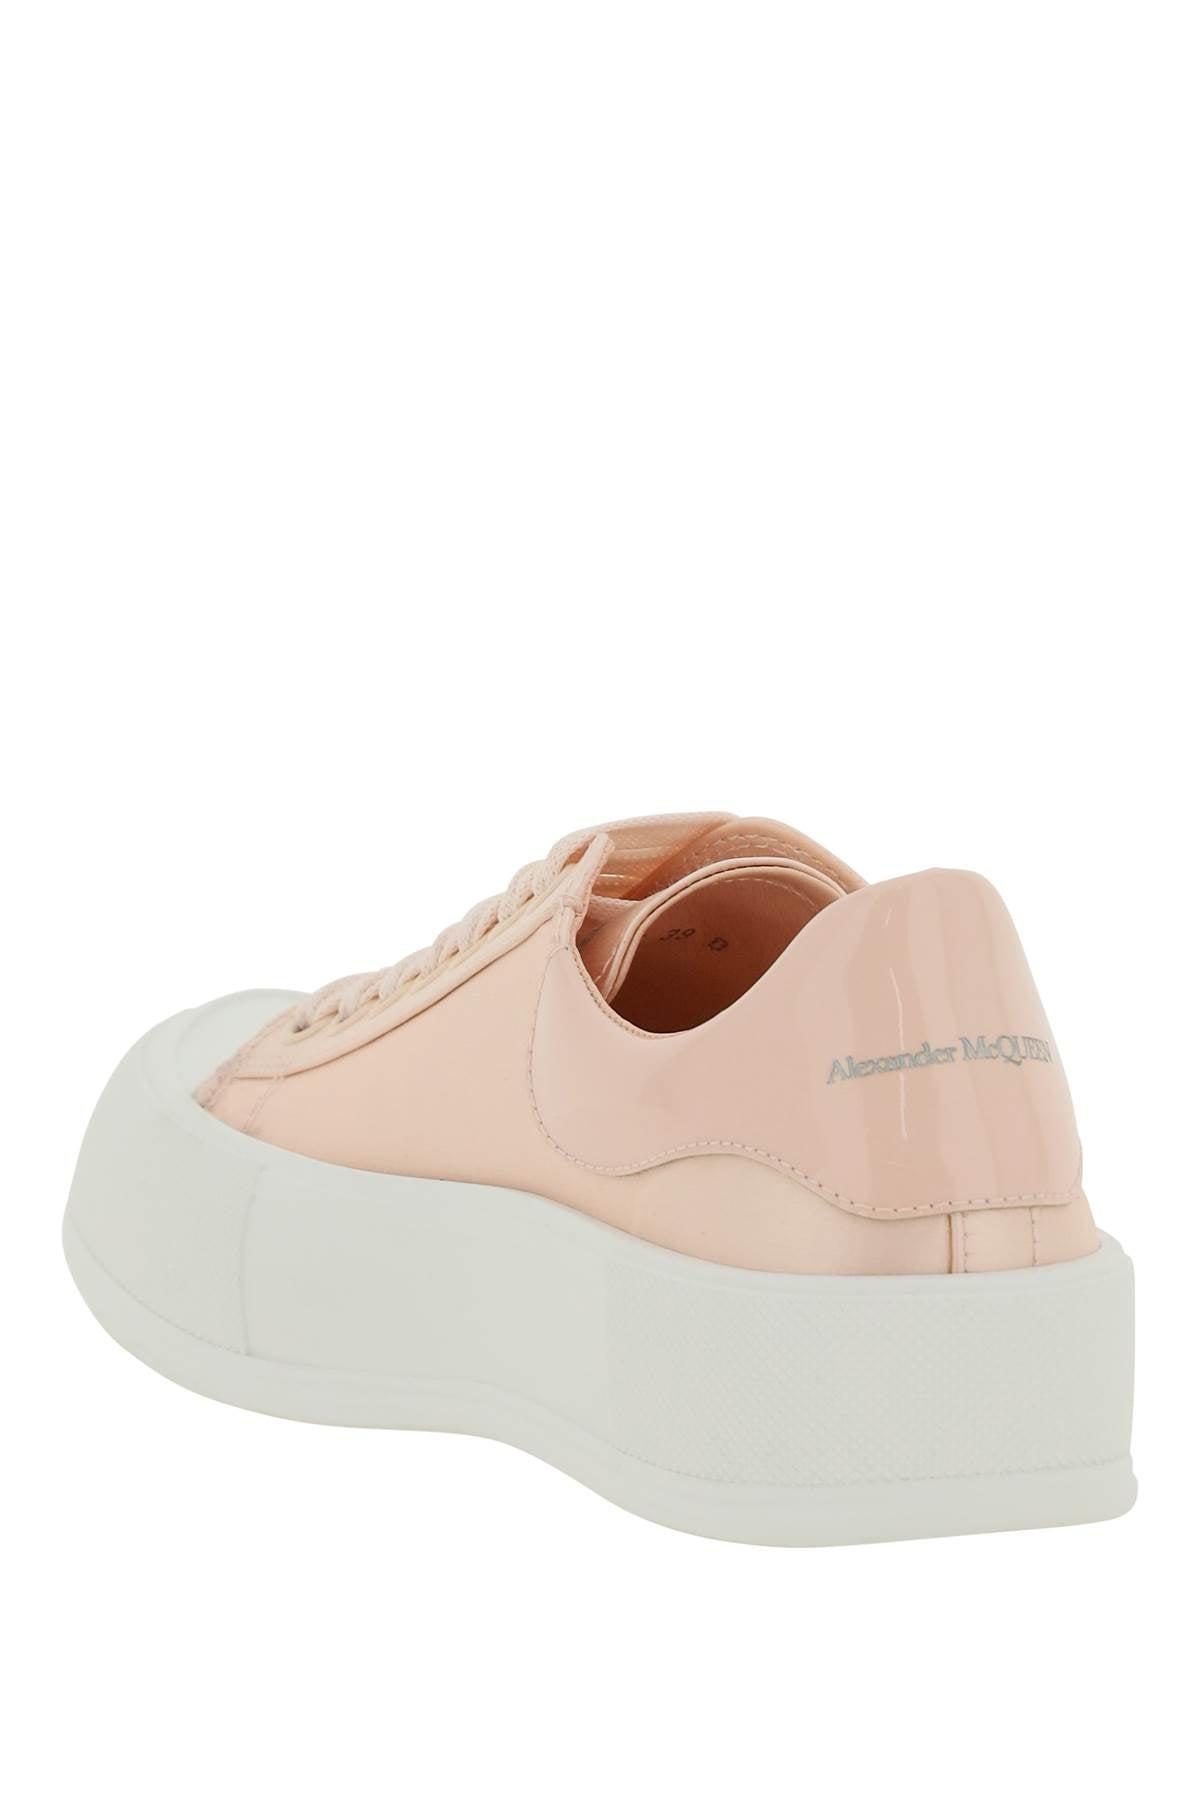 Alexander McQueen Satin Sneakers in Pink | Lyst